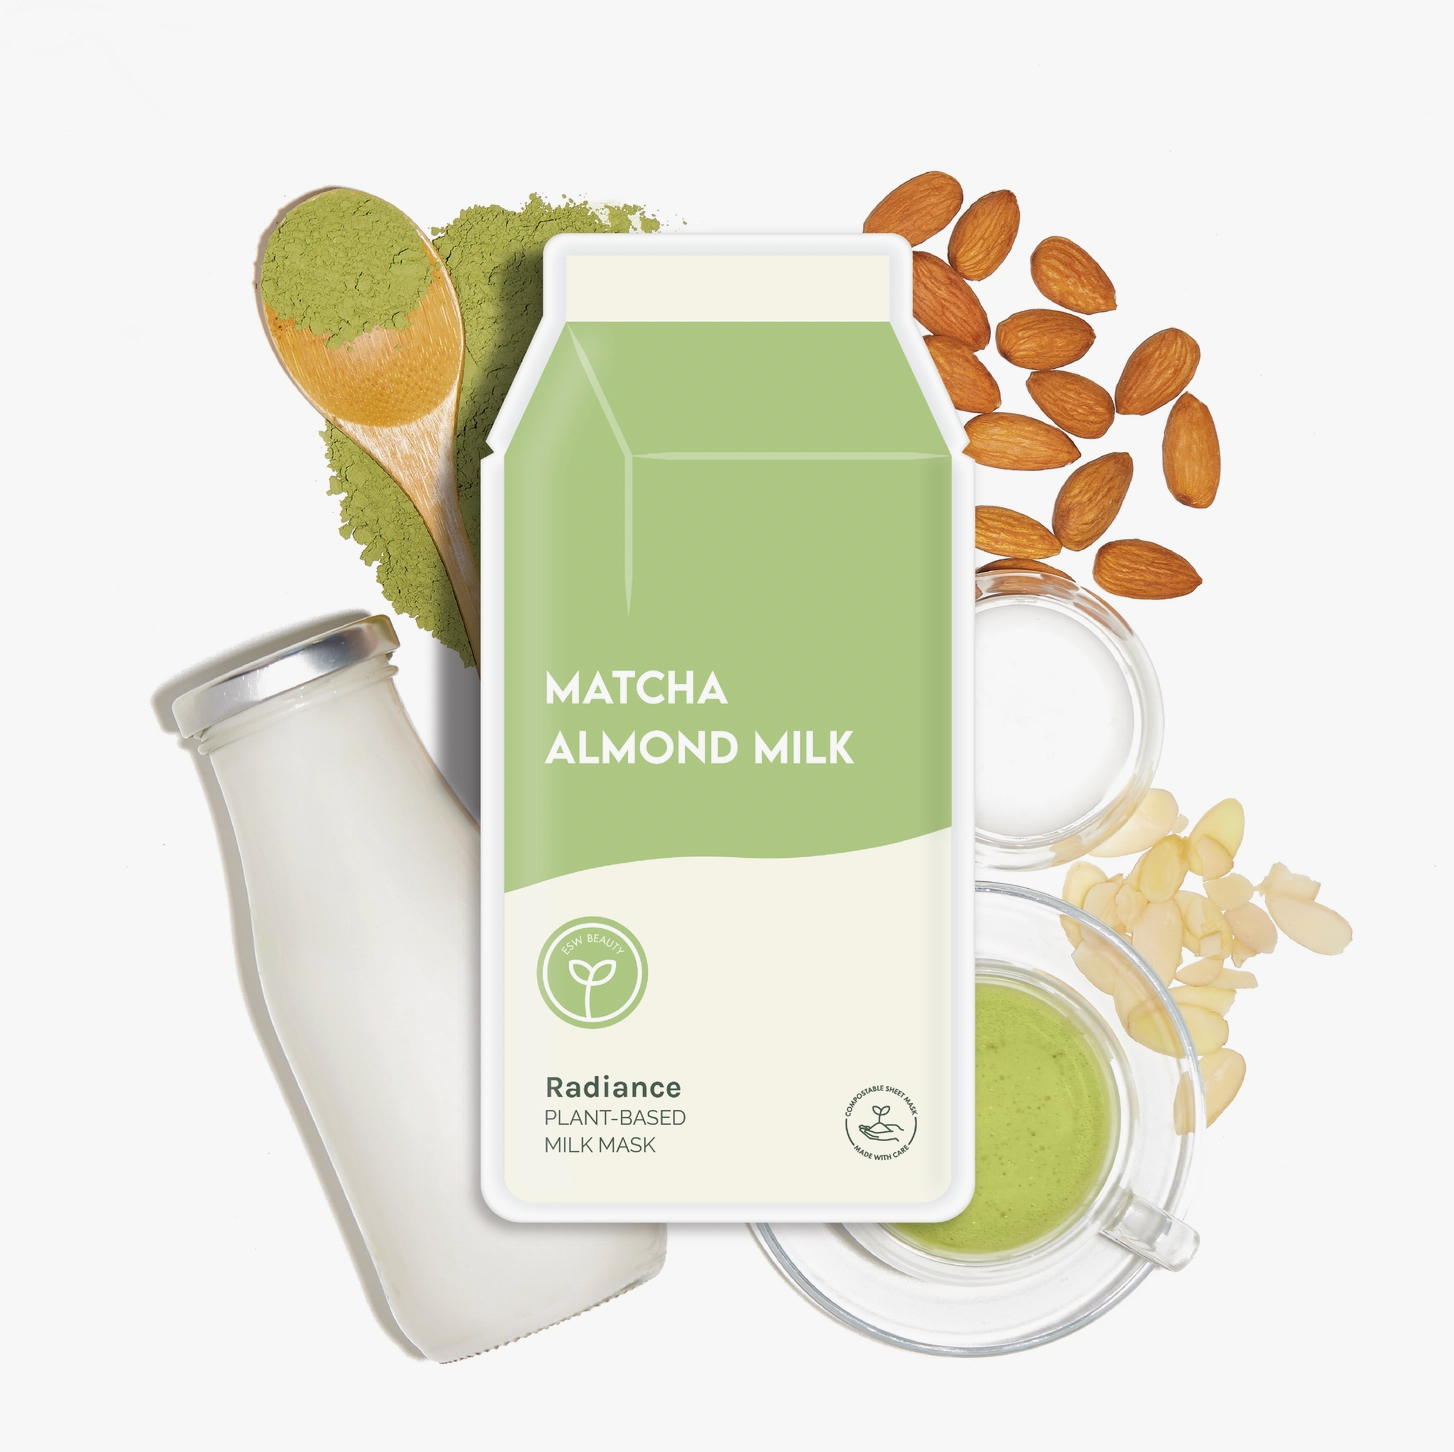 Matcha Almond Milk Sheet Mask